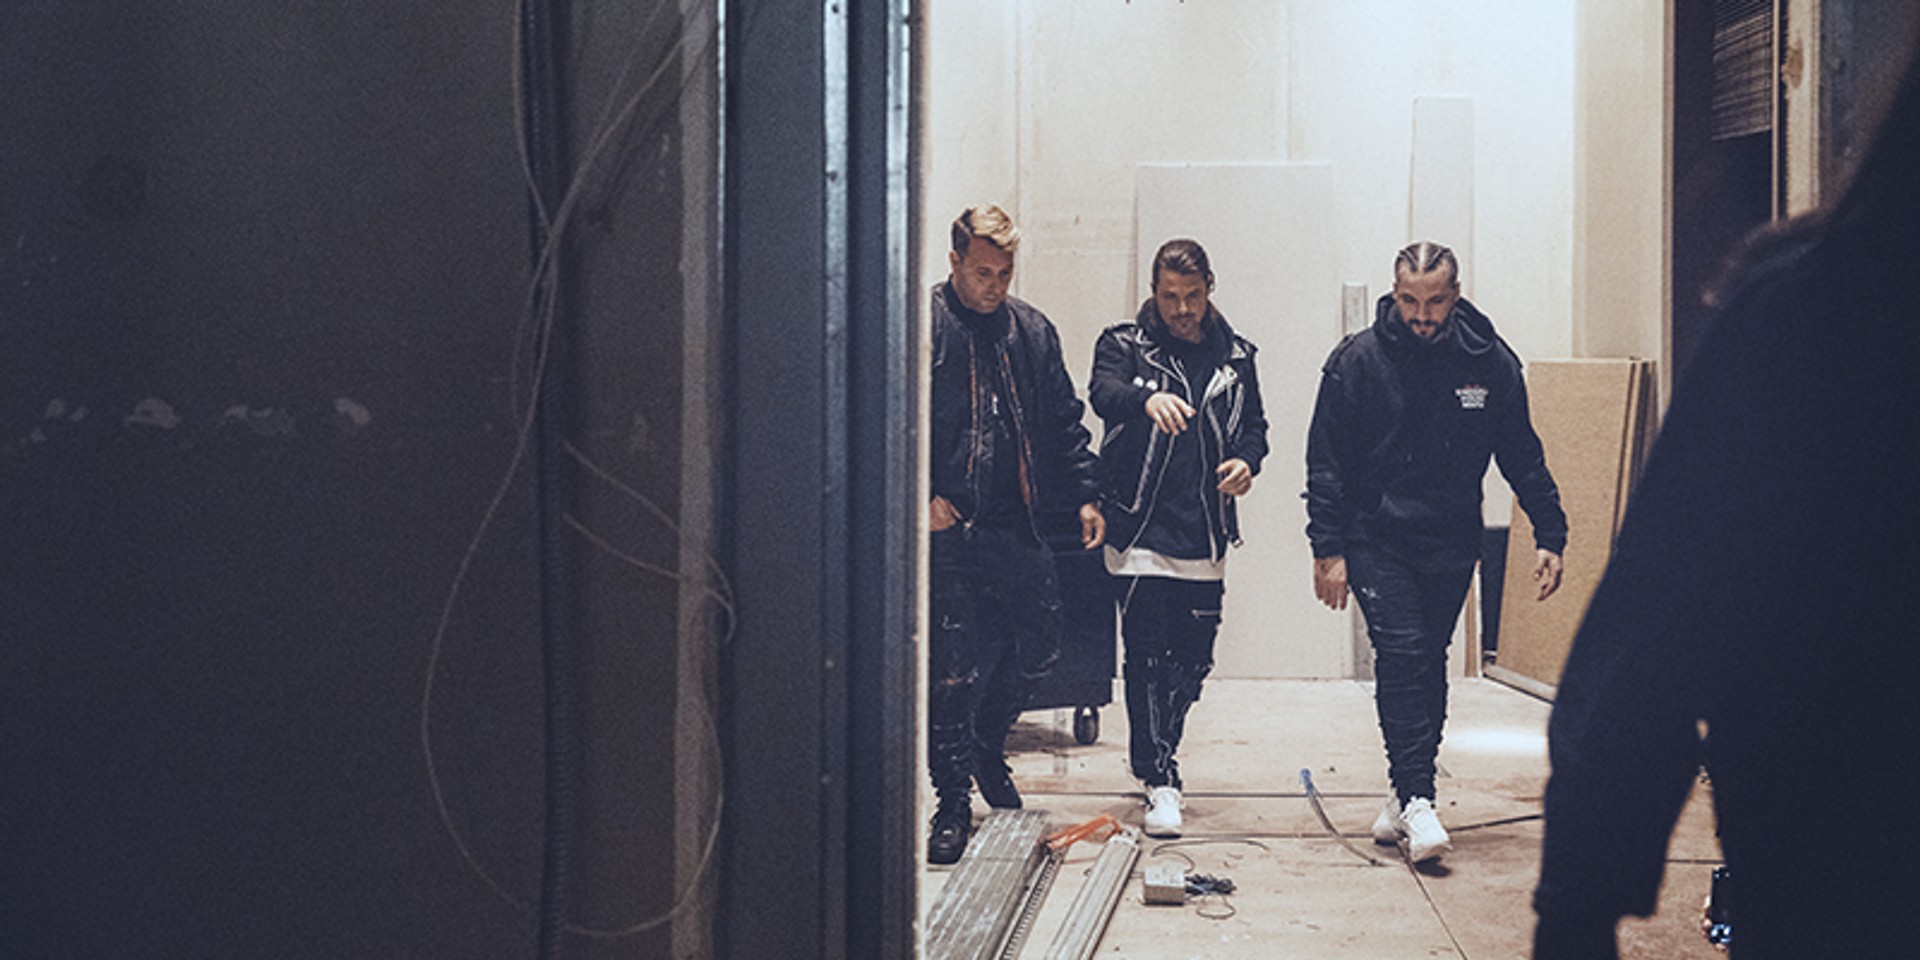 Swedish House Mafia reunite at Ultra Miami 2018